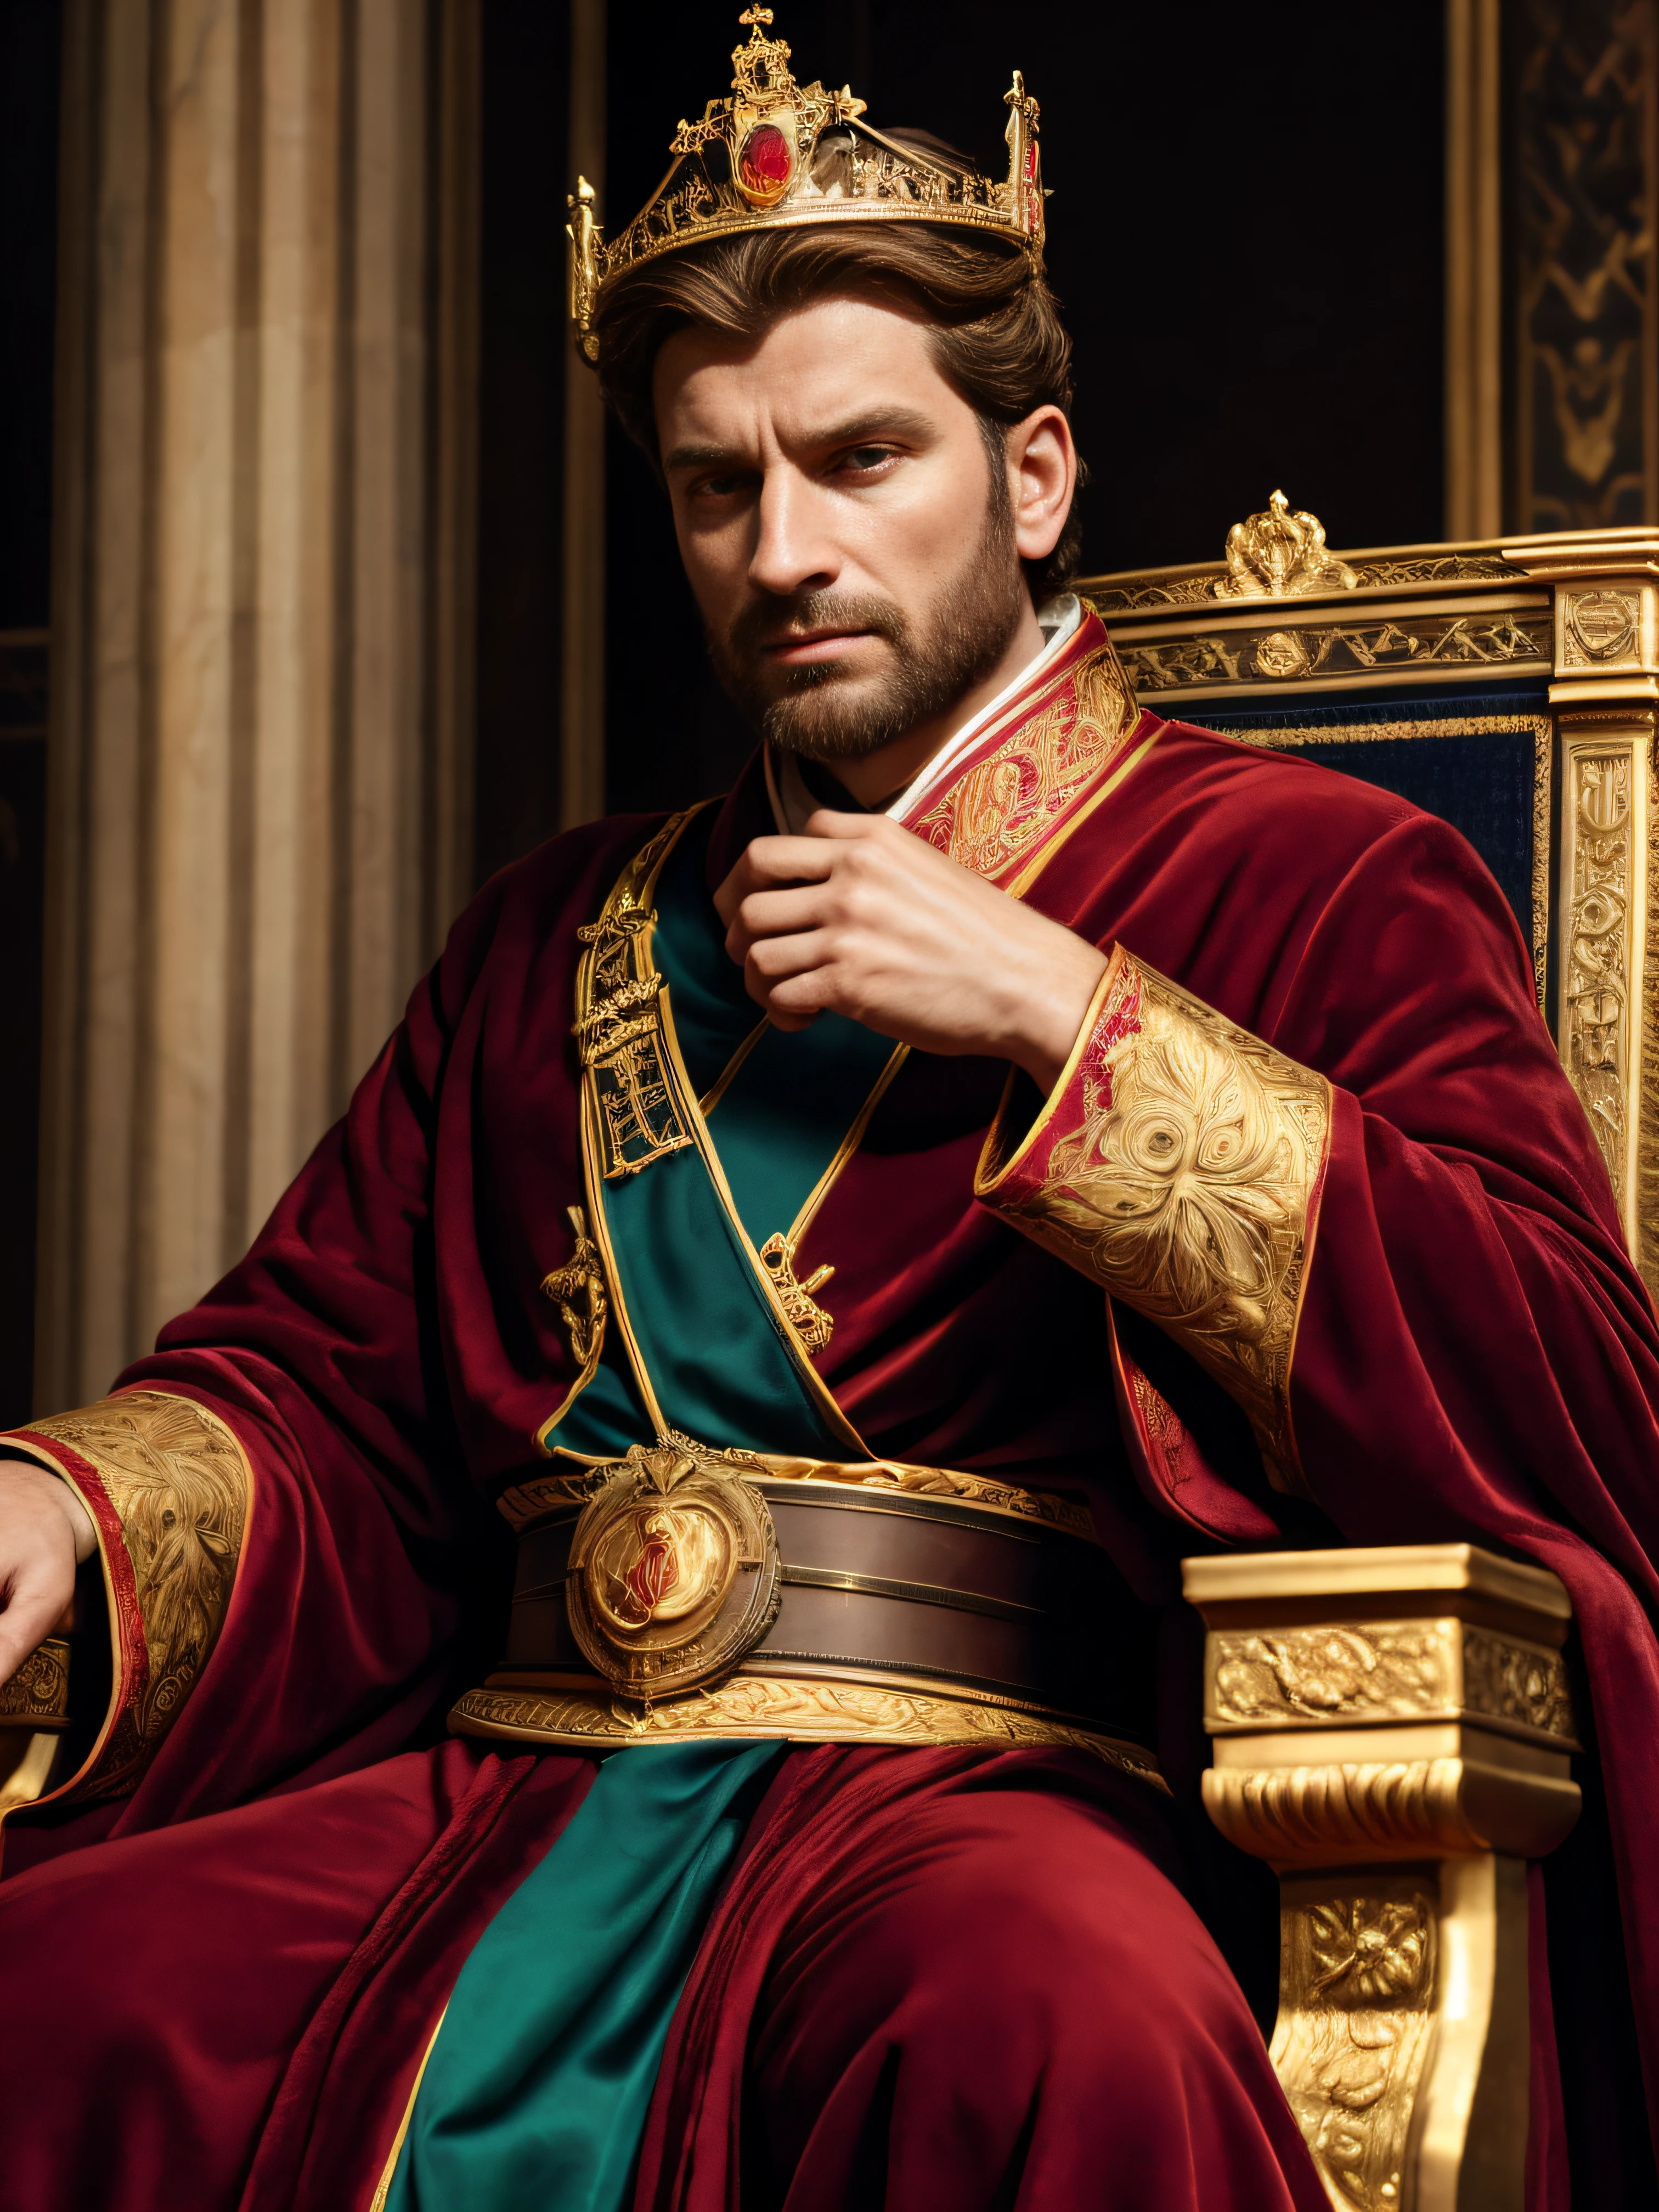 Константин Великий,Лучшее качество,ультрадетализированный,фотореалистичный,Портрет,Рисование,Римский император,умный и мощный,сильная линия подбородка,зоркие глаза,уверенное выражение,состояние々одетый в официальную одежду,сидящий на троне,окруженный символами власти и авторитета,золотая корона,красный бархатный халат,Справка по истории,Мраморные столбы,интенсивное освещение,прохладные тона,Великолепие и величие.